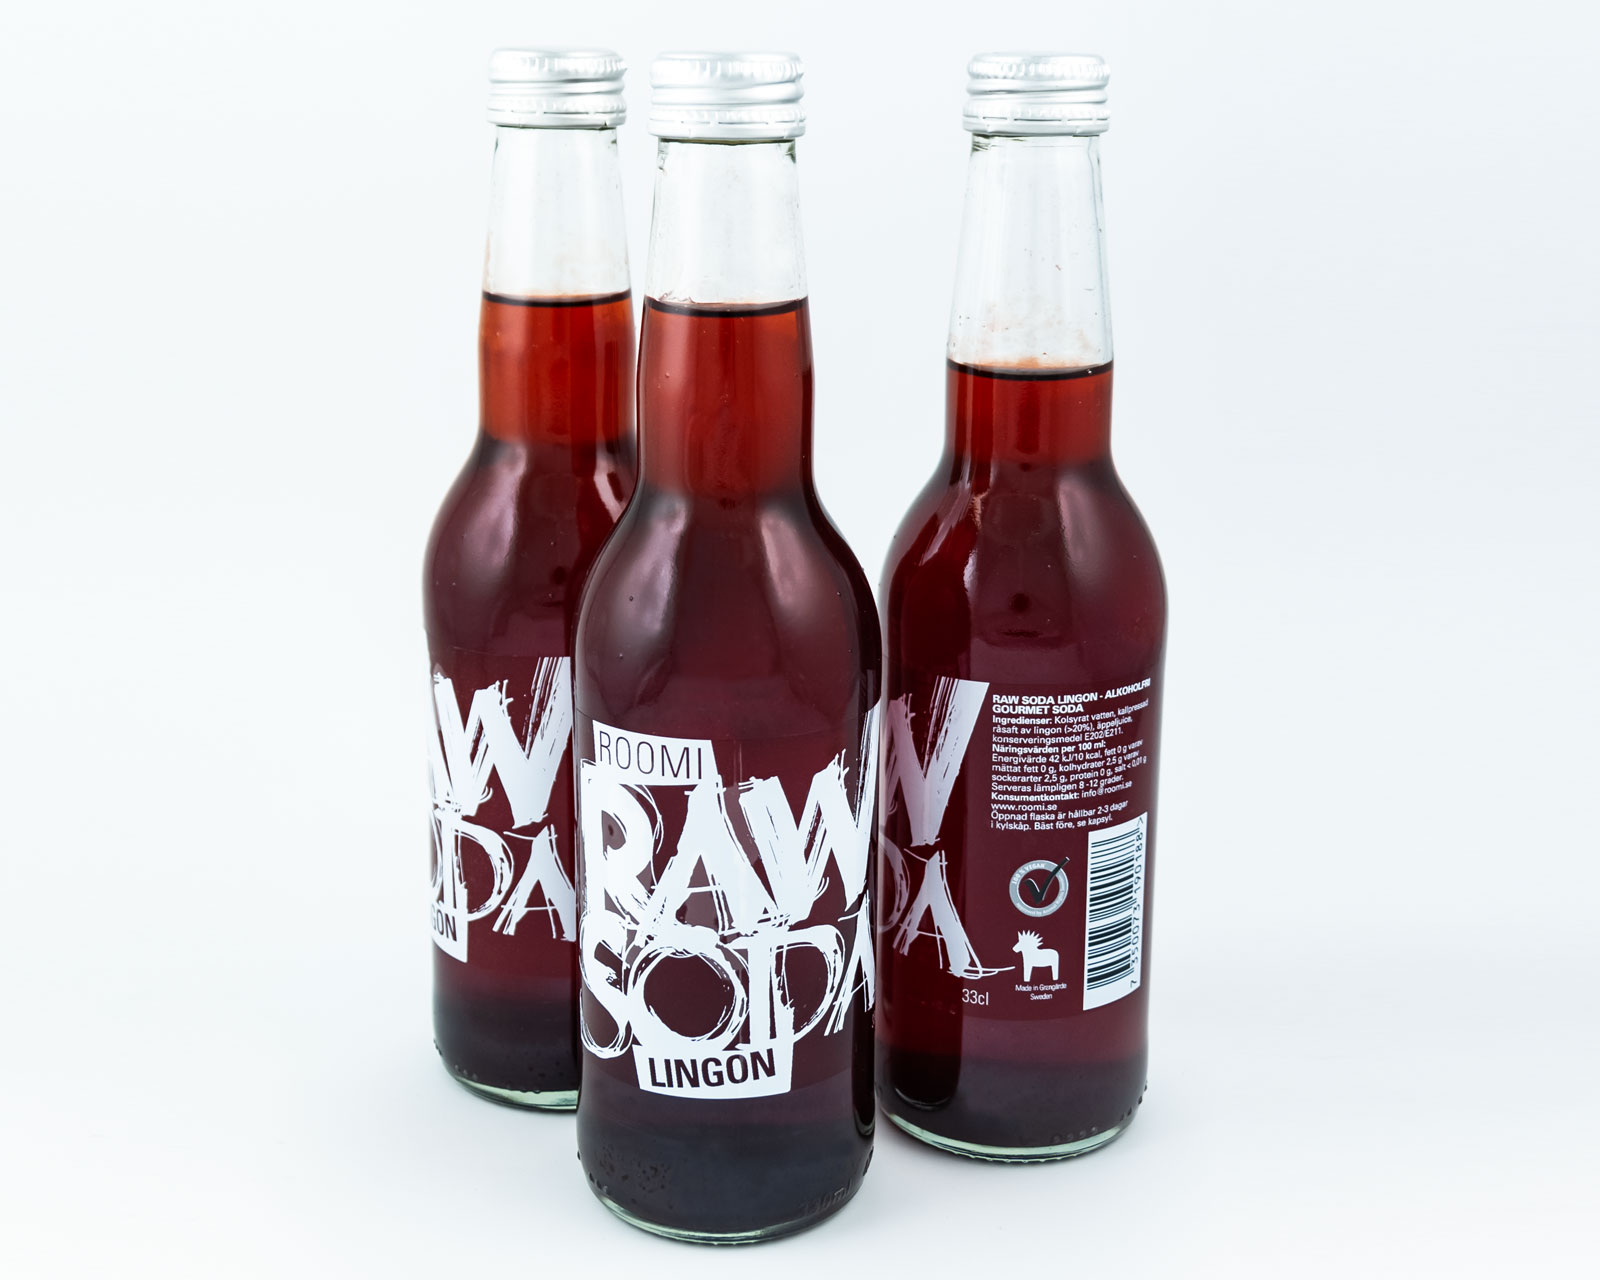 Raw Soda bottles